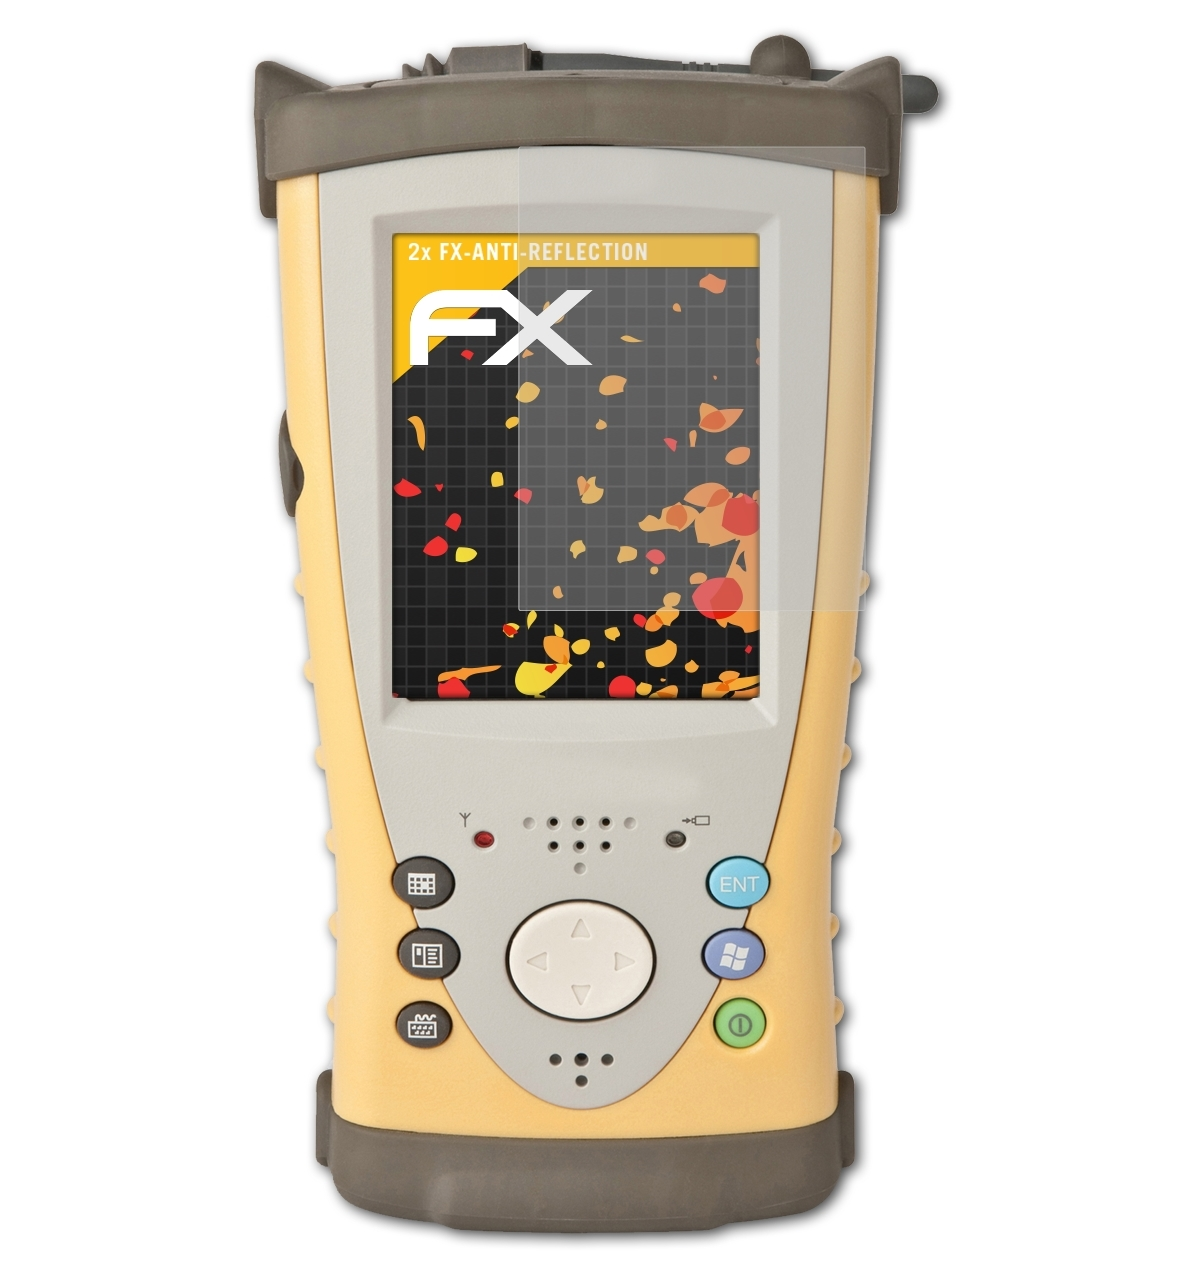 FX-Antireflex Topcon FC-200) Displayschutz(für 2x ATFOLIX